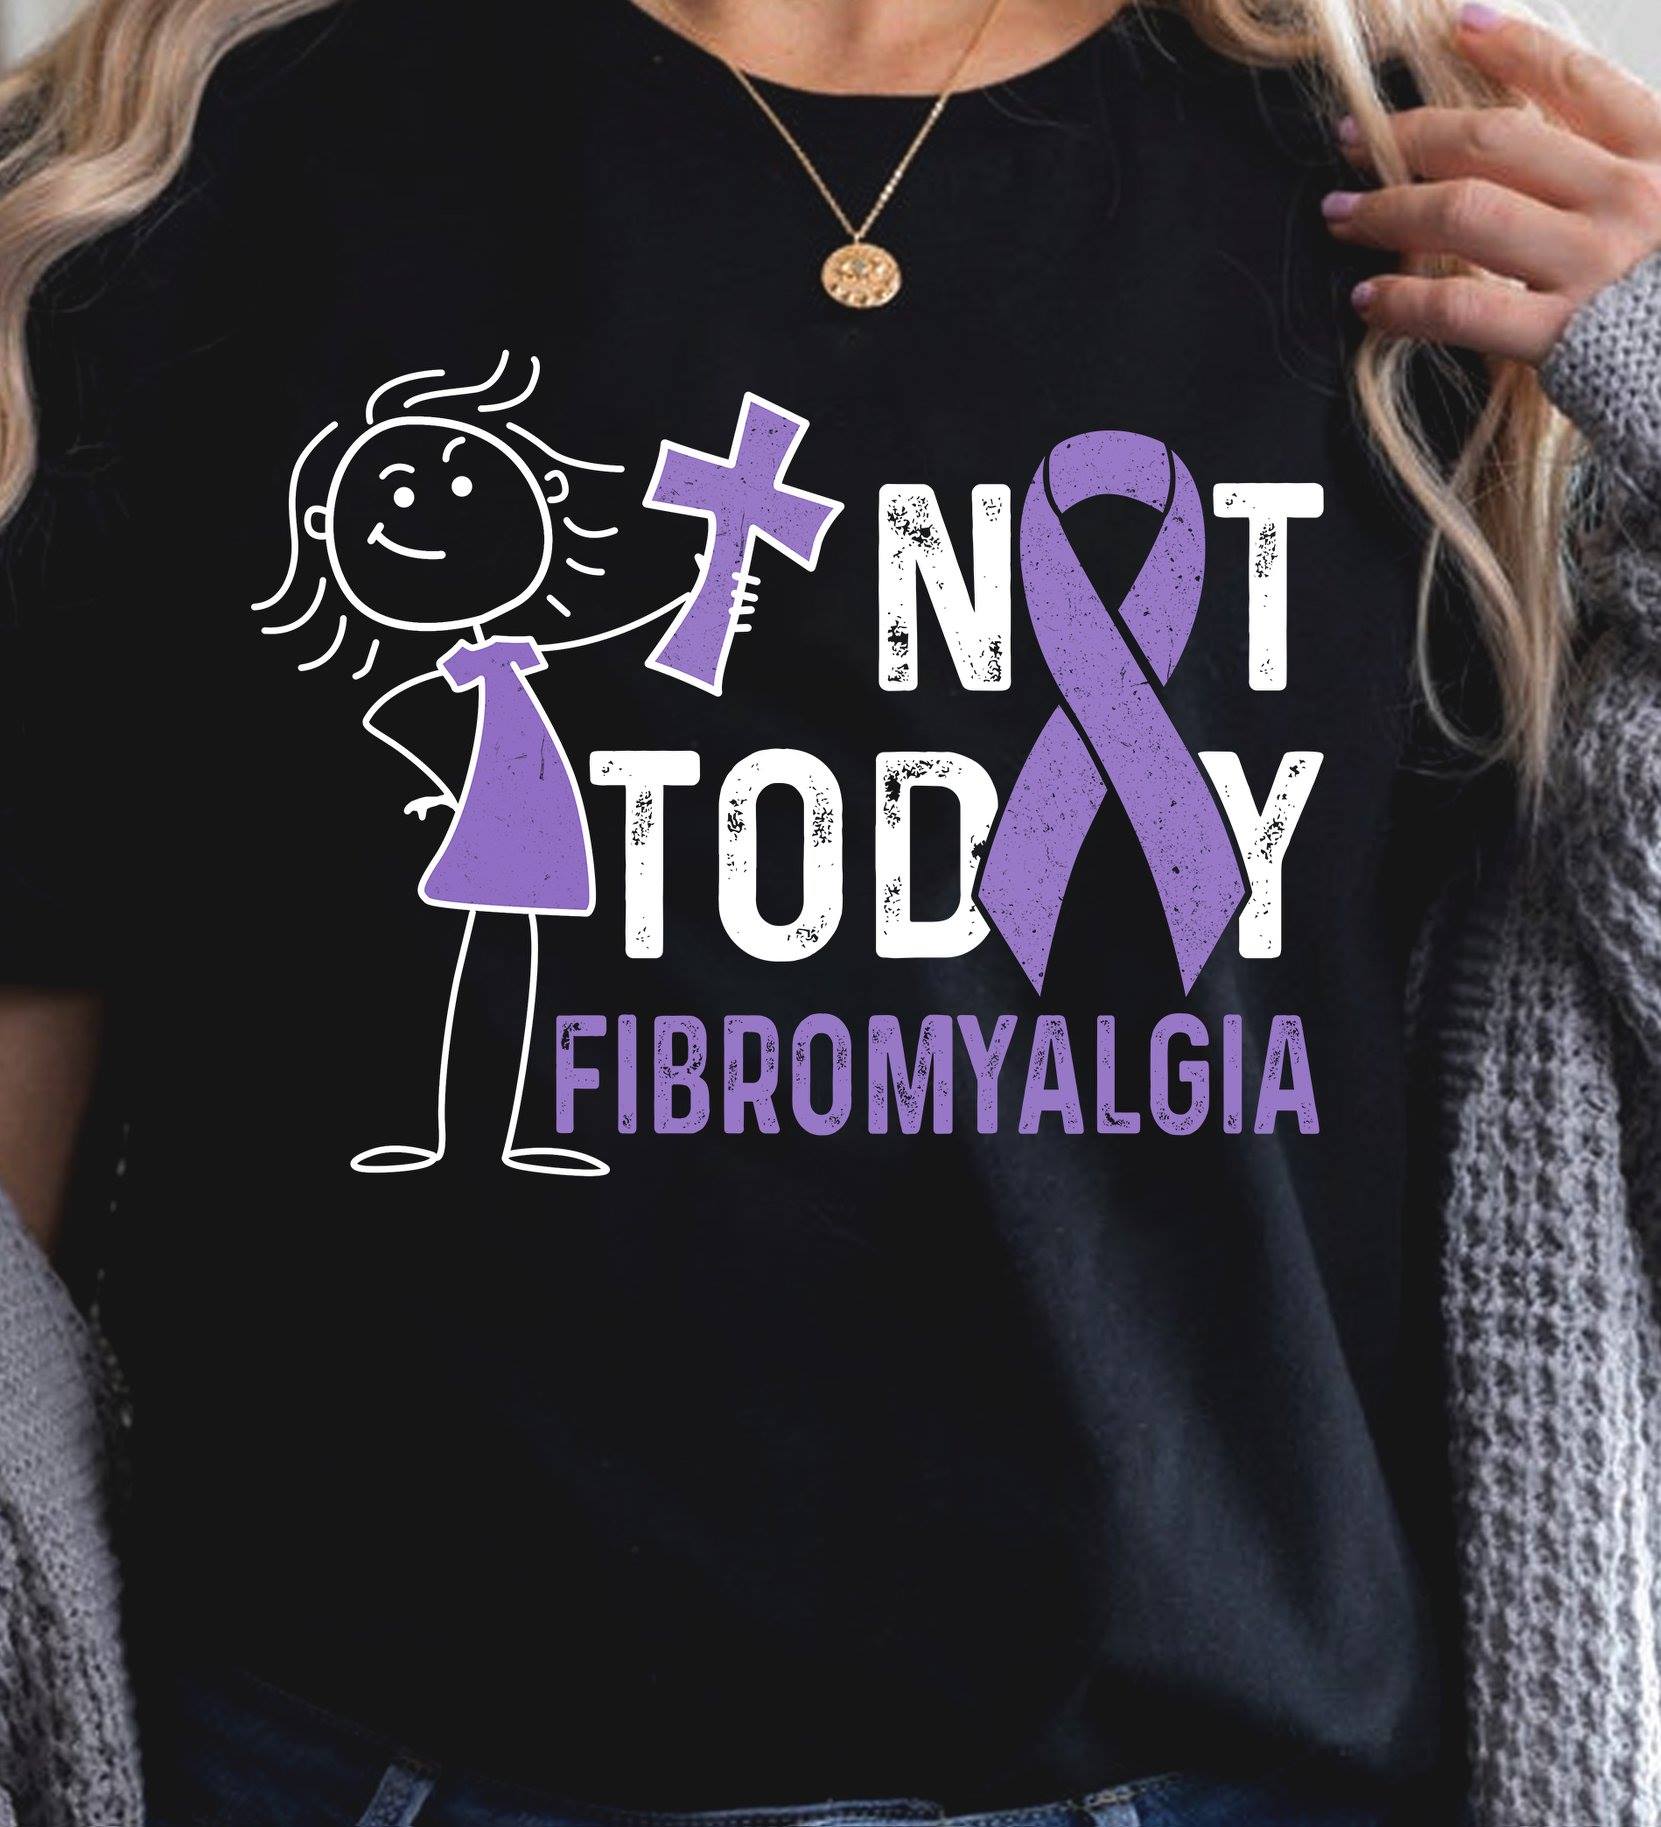 Not today - Fibromyalgia awareness